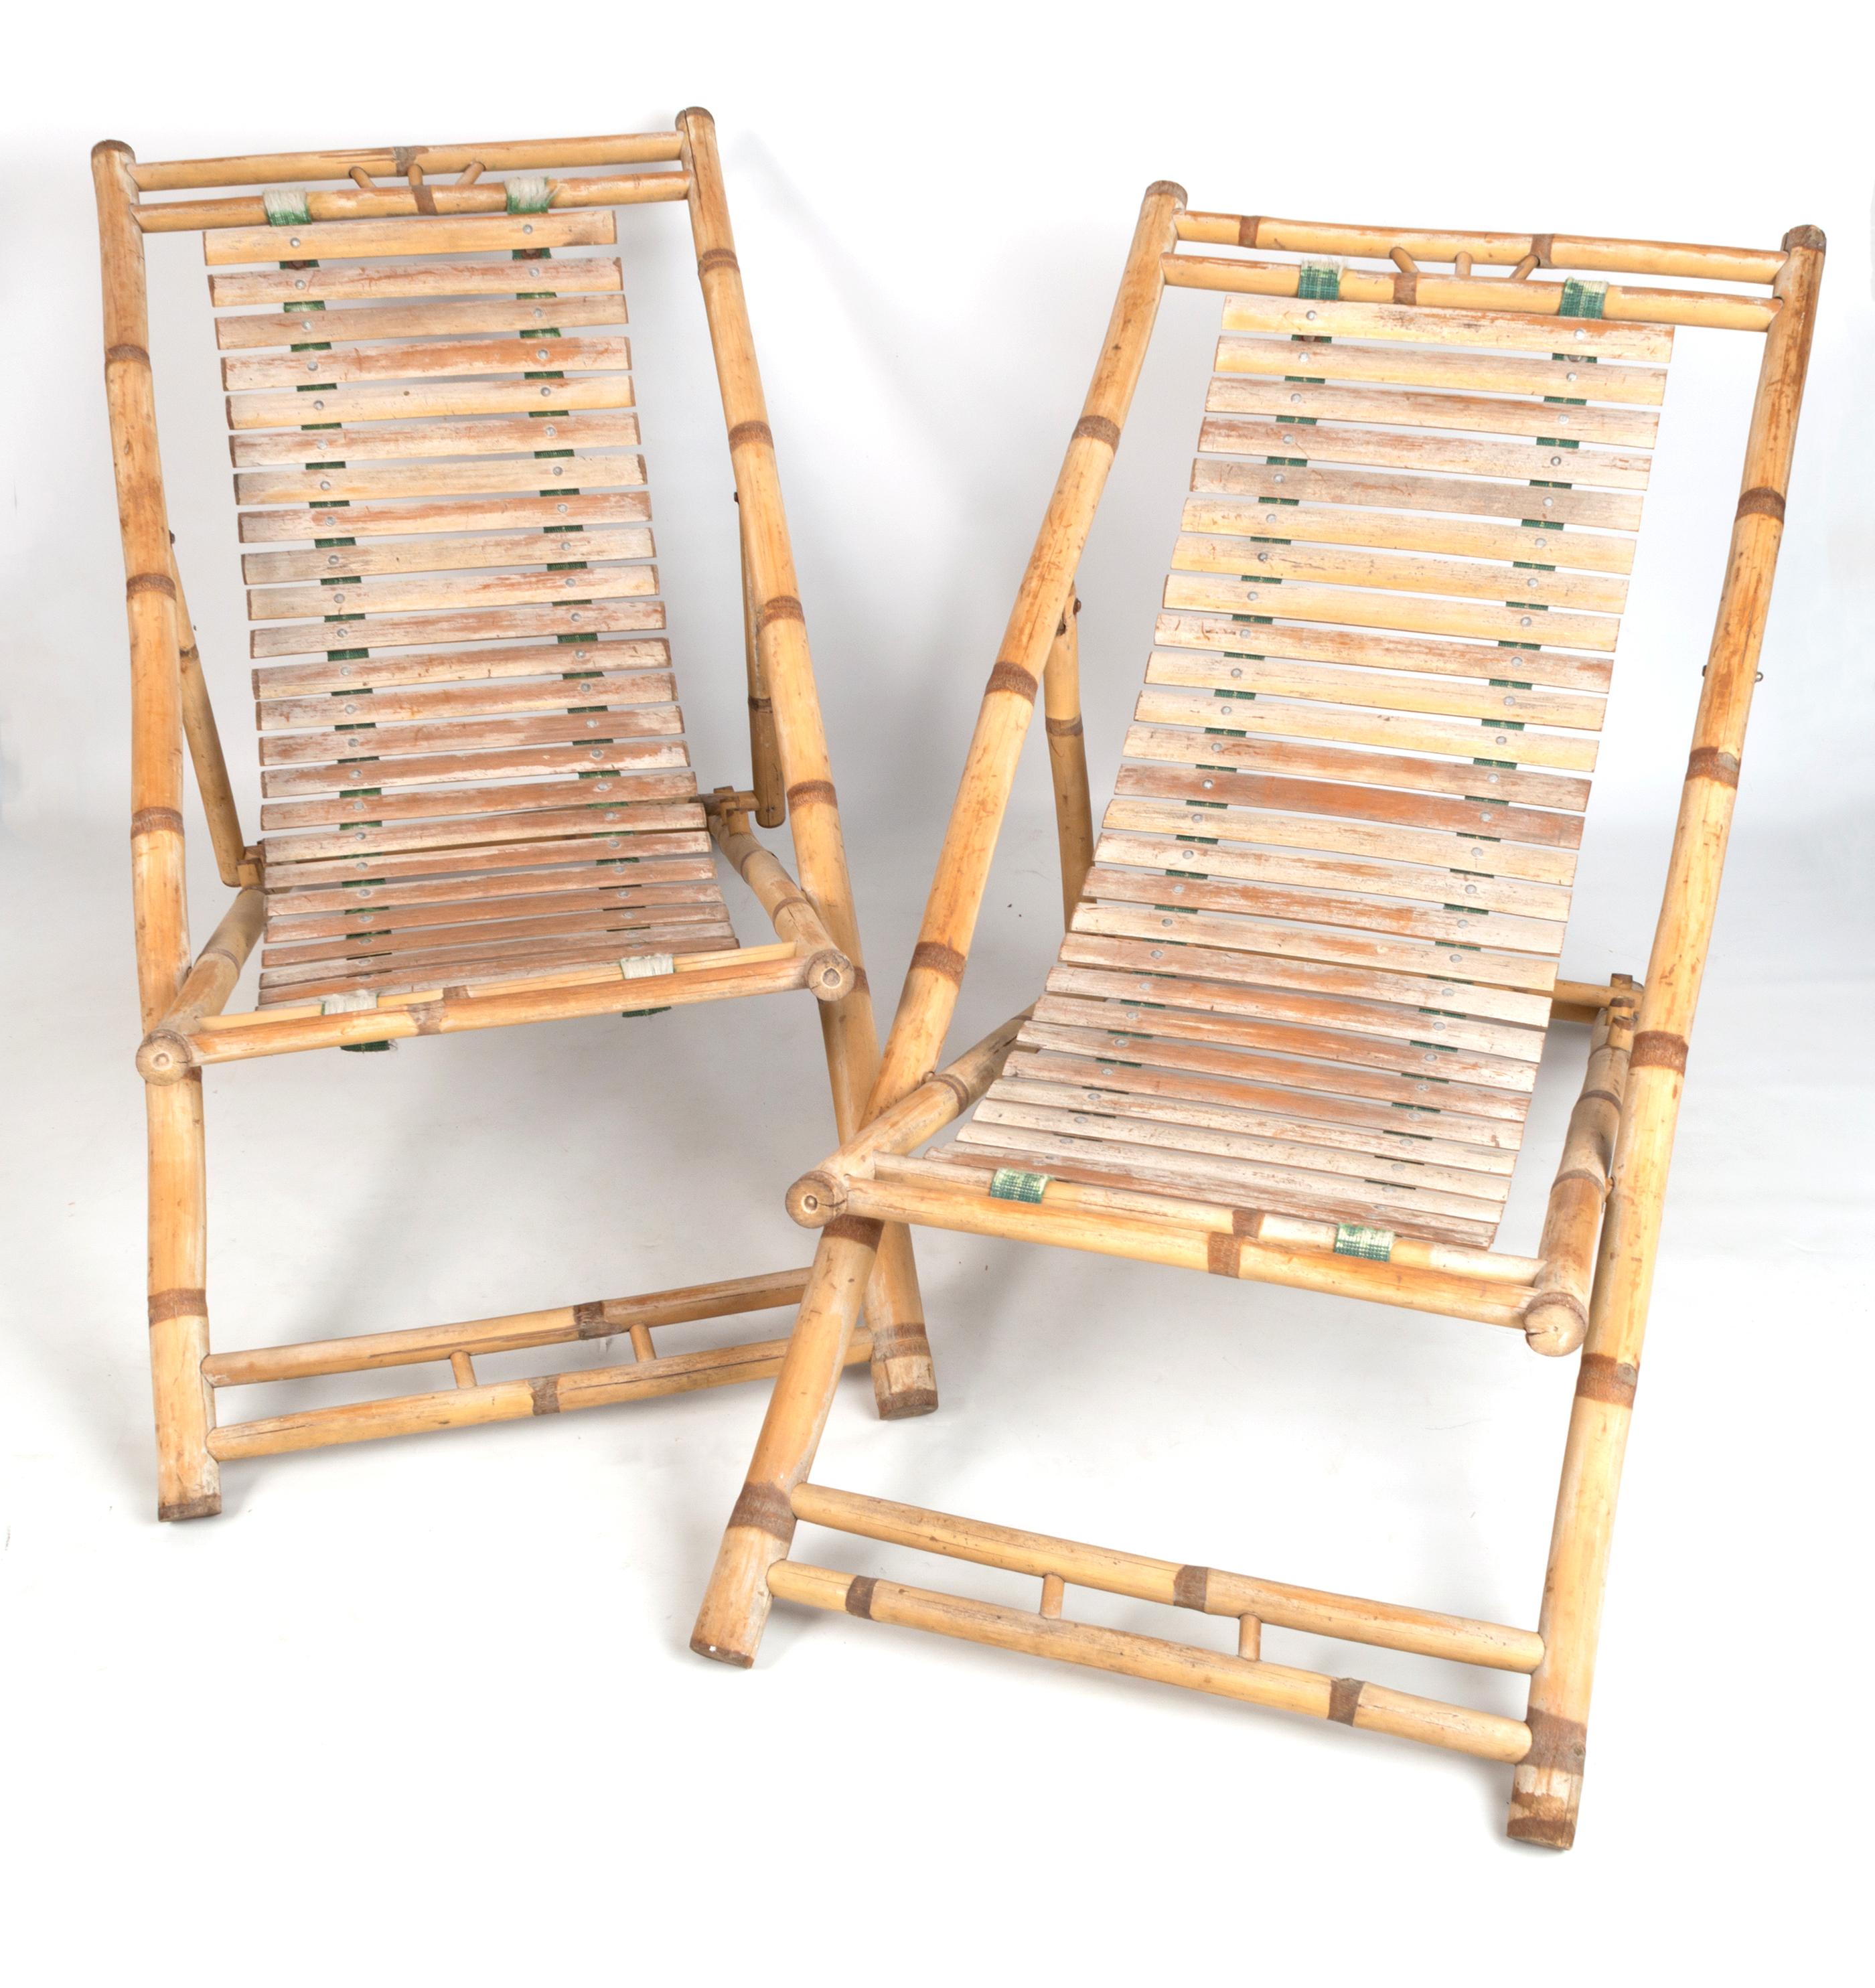 Paire de chaises longues en bambou C.I.C. 1980, Italie

Dimensions à plat : L 137 L 60 P 10cm.

